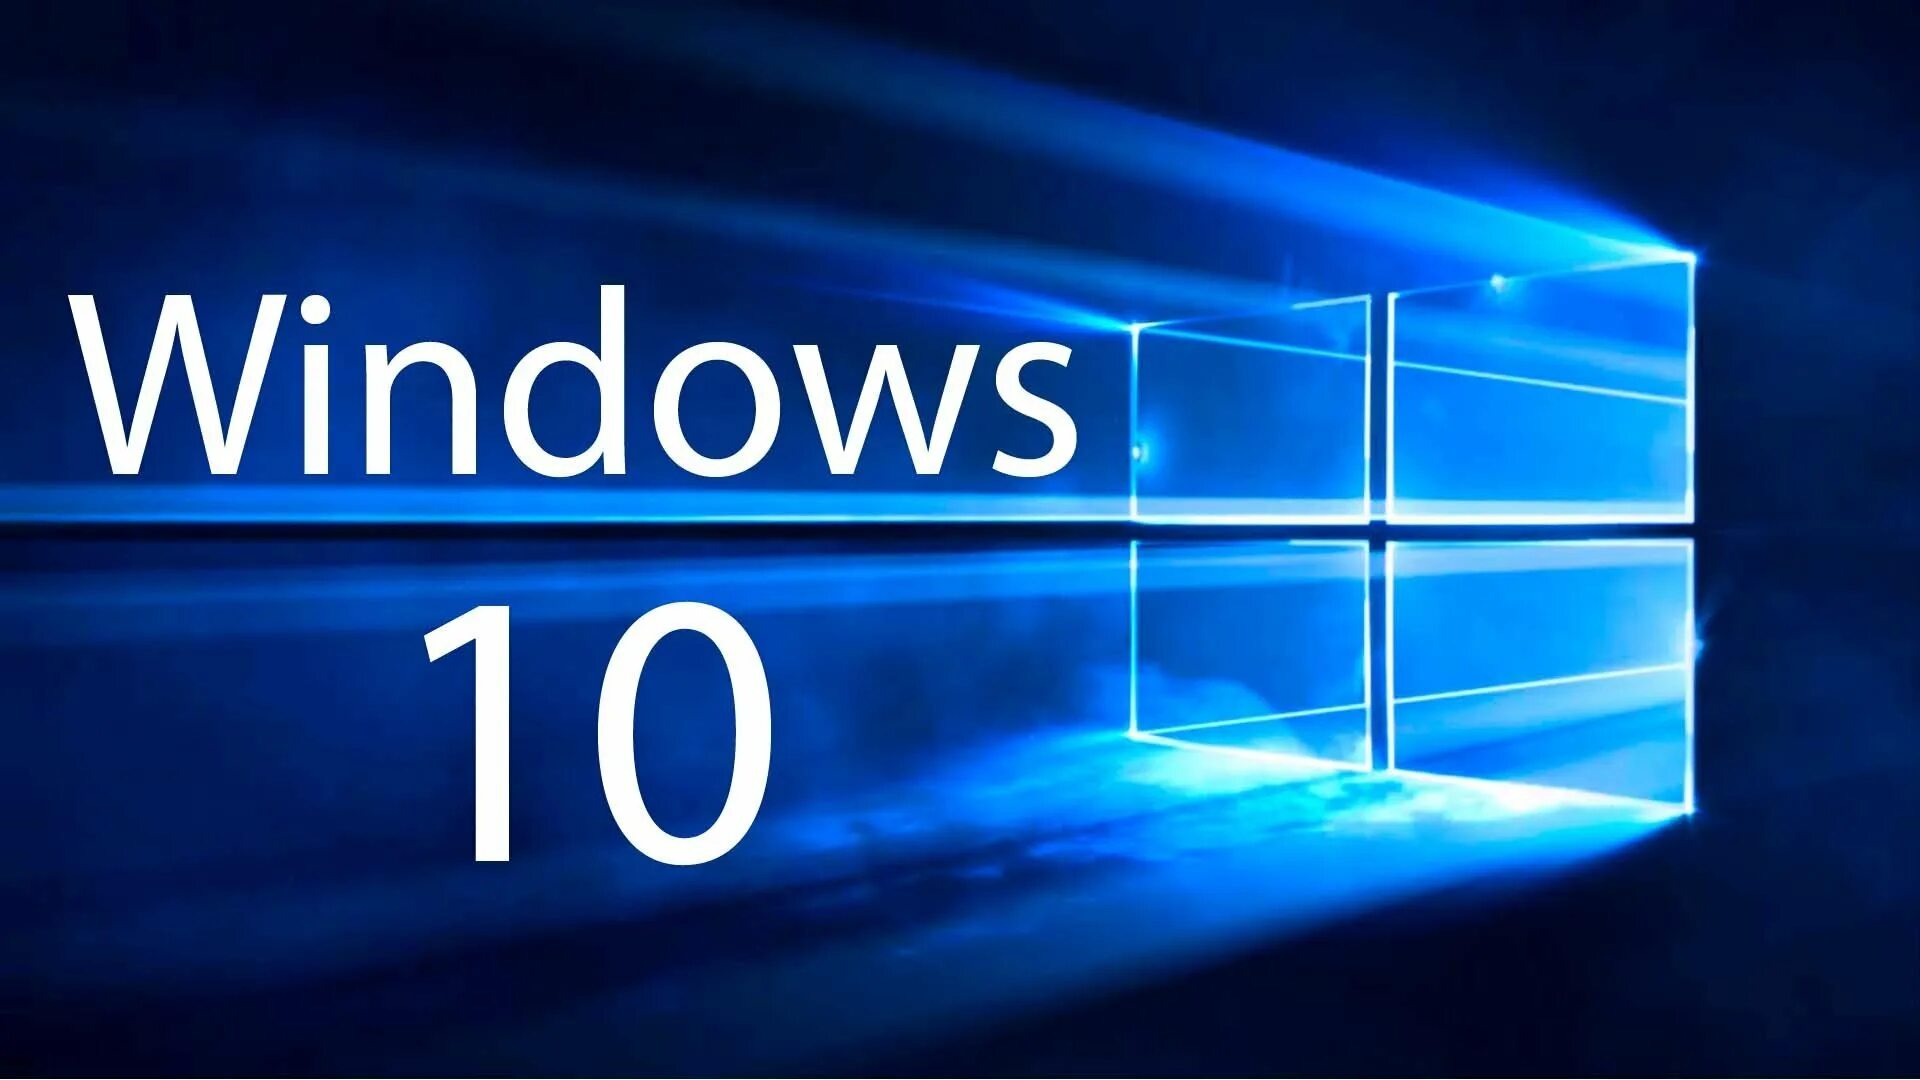 Windows 10 av. Microsoft Windows 10. ОС виндовс 10. Логотип виндовс 10. Картинки виндовс 10.